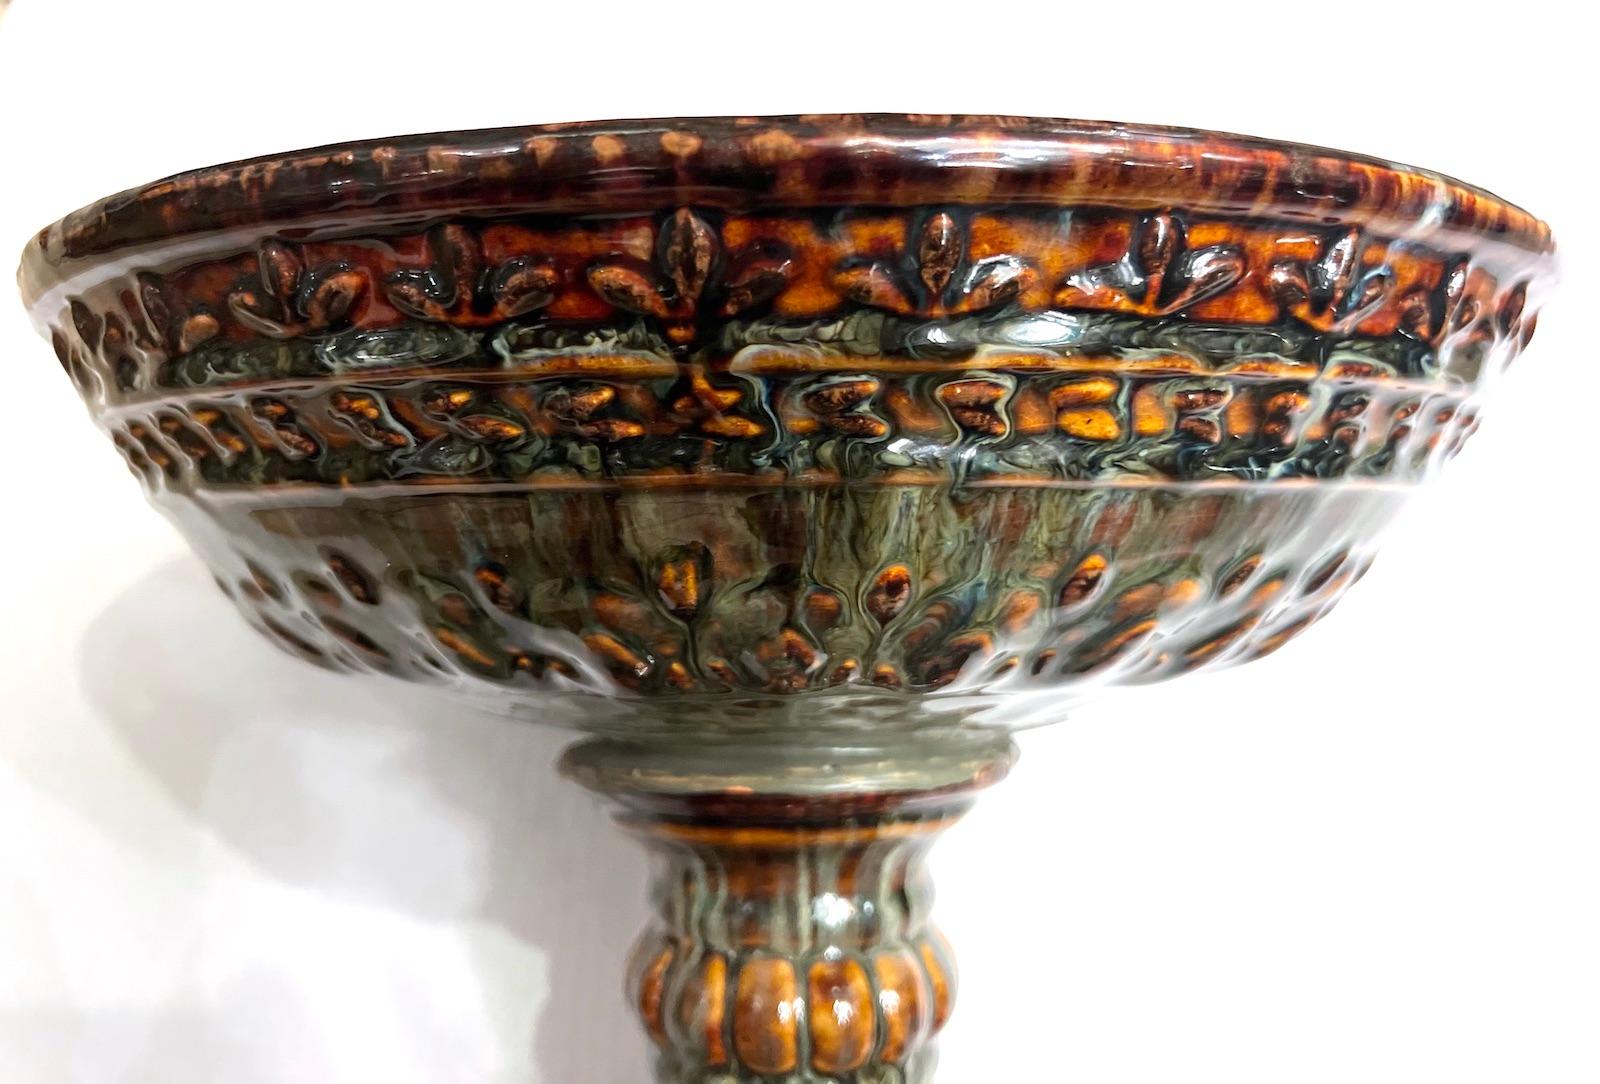 Eine italienische glasierte Keramik-Tazza aus den 1960er Jahren.

Abmessungen:
Durchmesser: 13,5